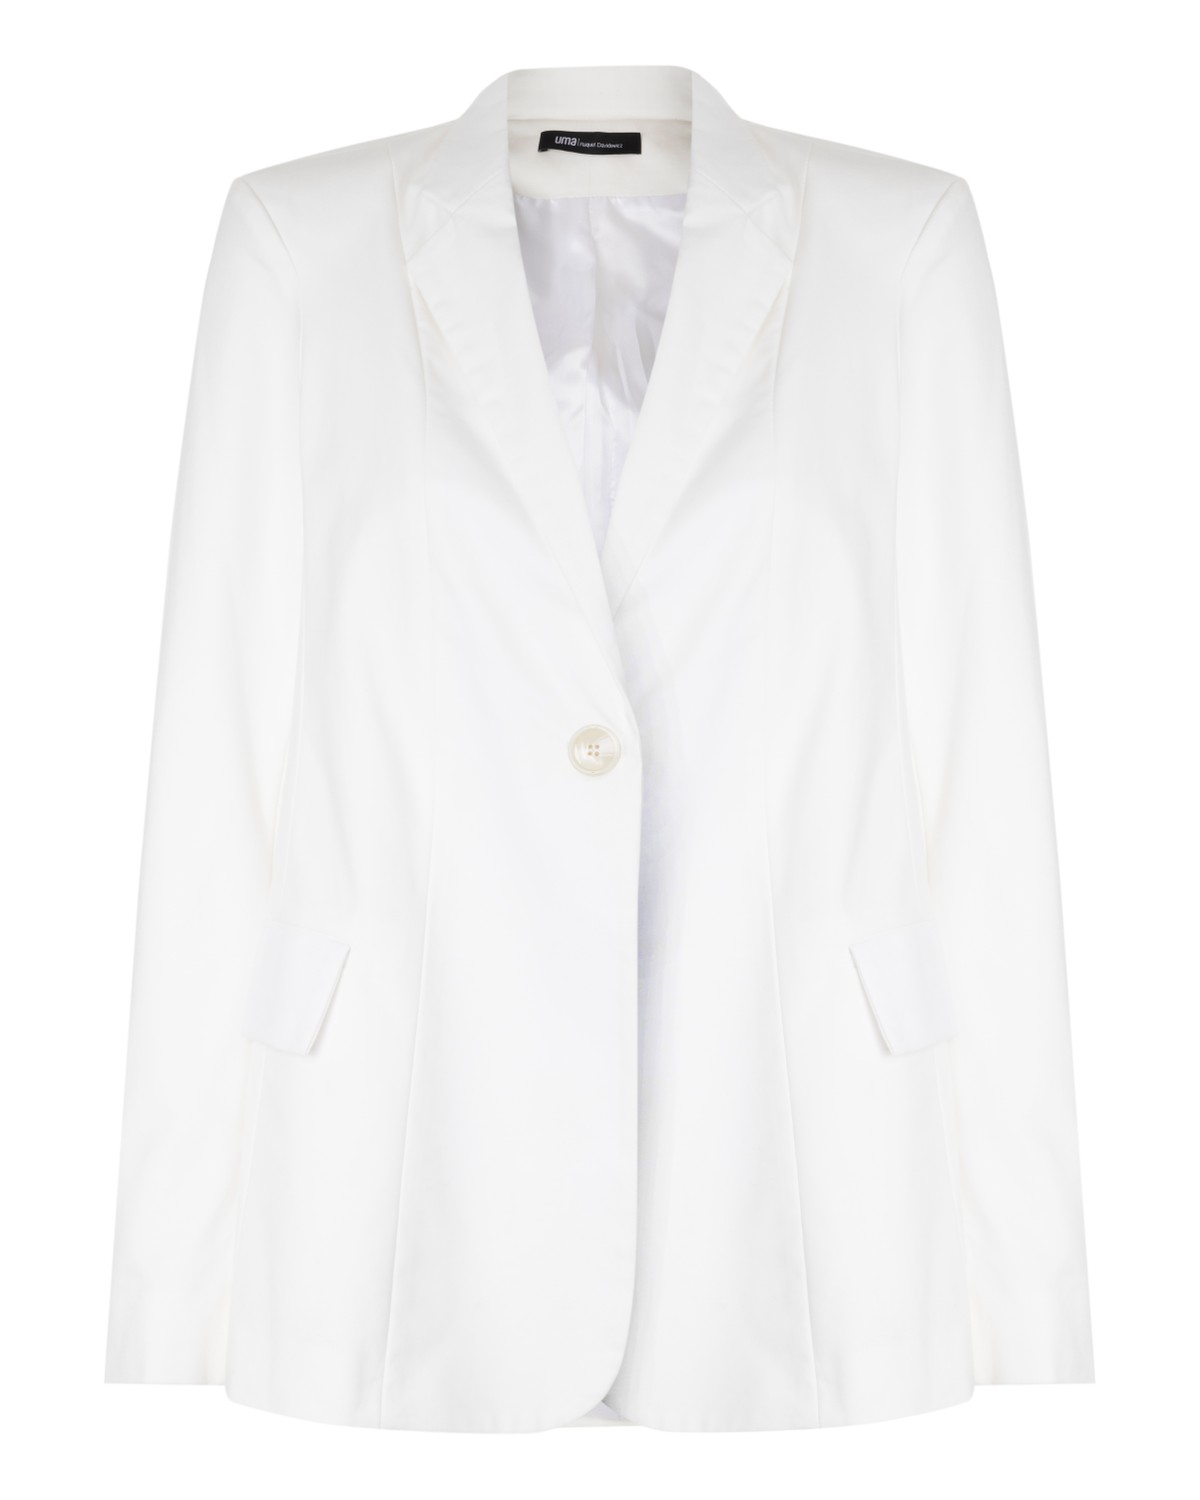 blazer em algodão com bolsos | cotton blazer with pockets